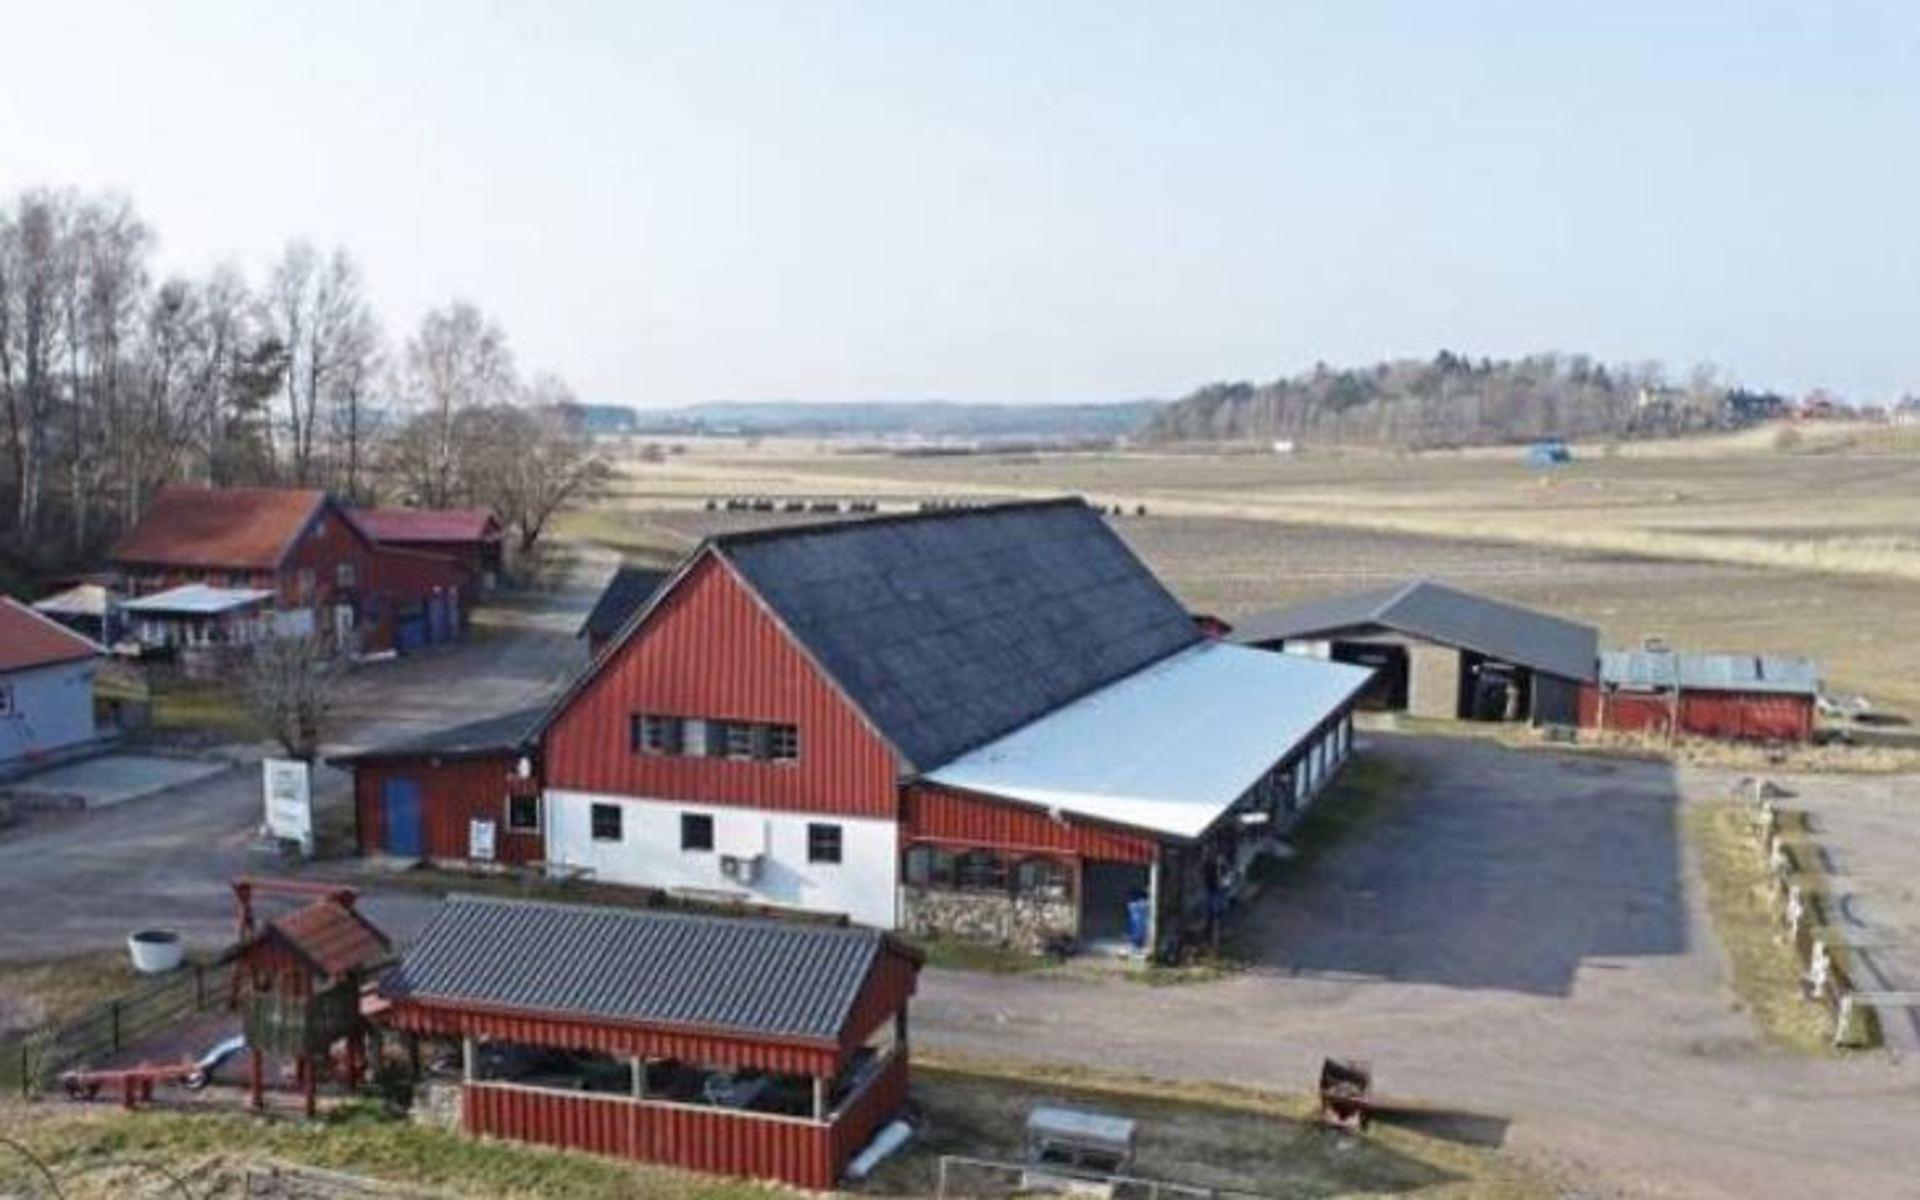 Totalt är det 15 hektar mark i Säve som ligger ute till försäljning. 